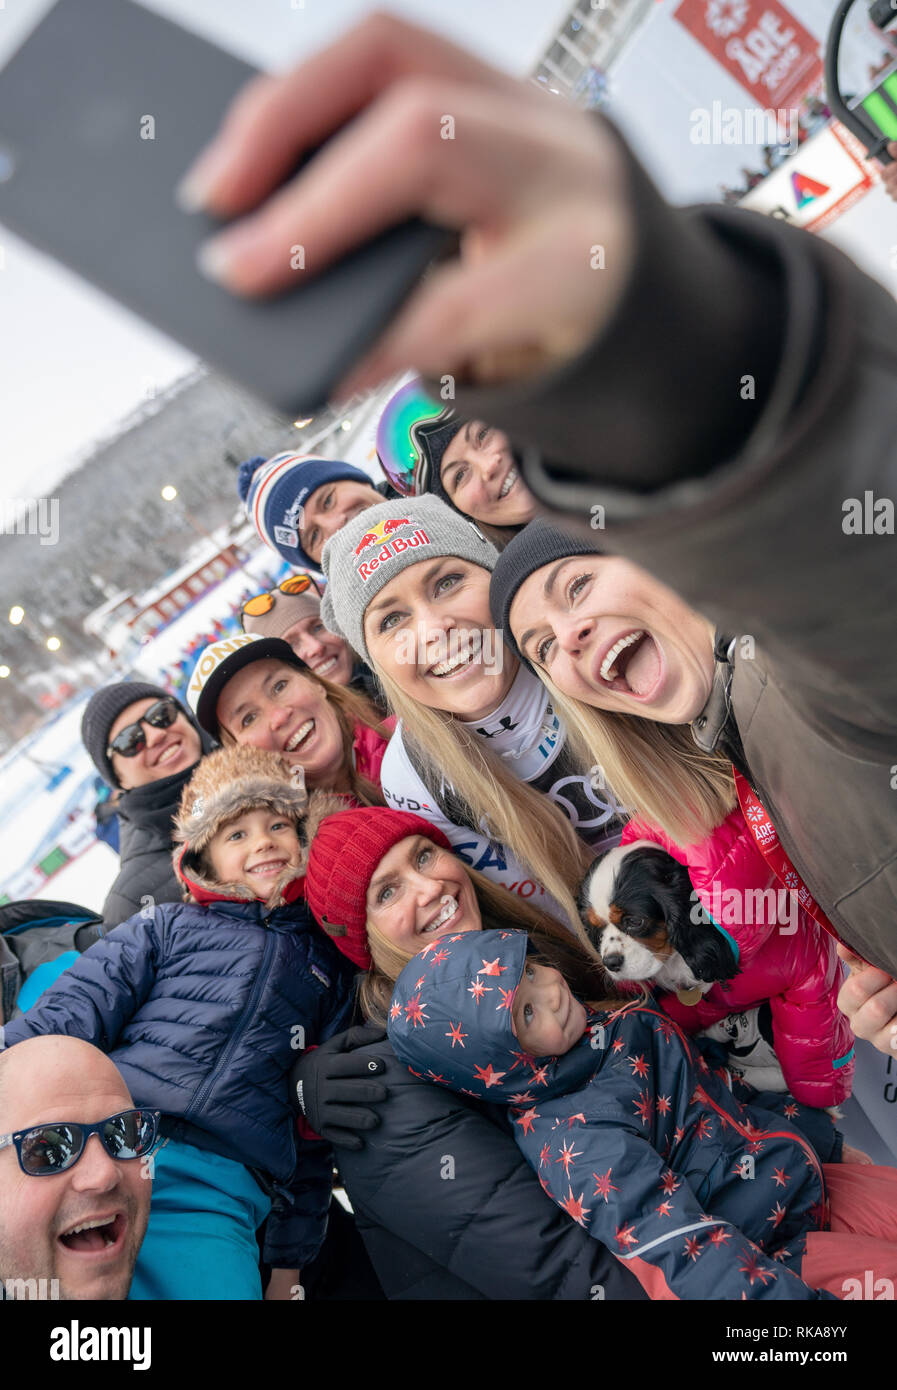 Sono, Svezia. 10 Febbraio, 2019. Sci alpino, del campionato del mondo di downhill, signore: Lindsey Vonn dagli USA pone dopo la gara con la sorella Karin Kildow (r) per un Selfie. Credito: Michael Kappeler/dpa/Alamy Live News Foto Stock